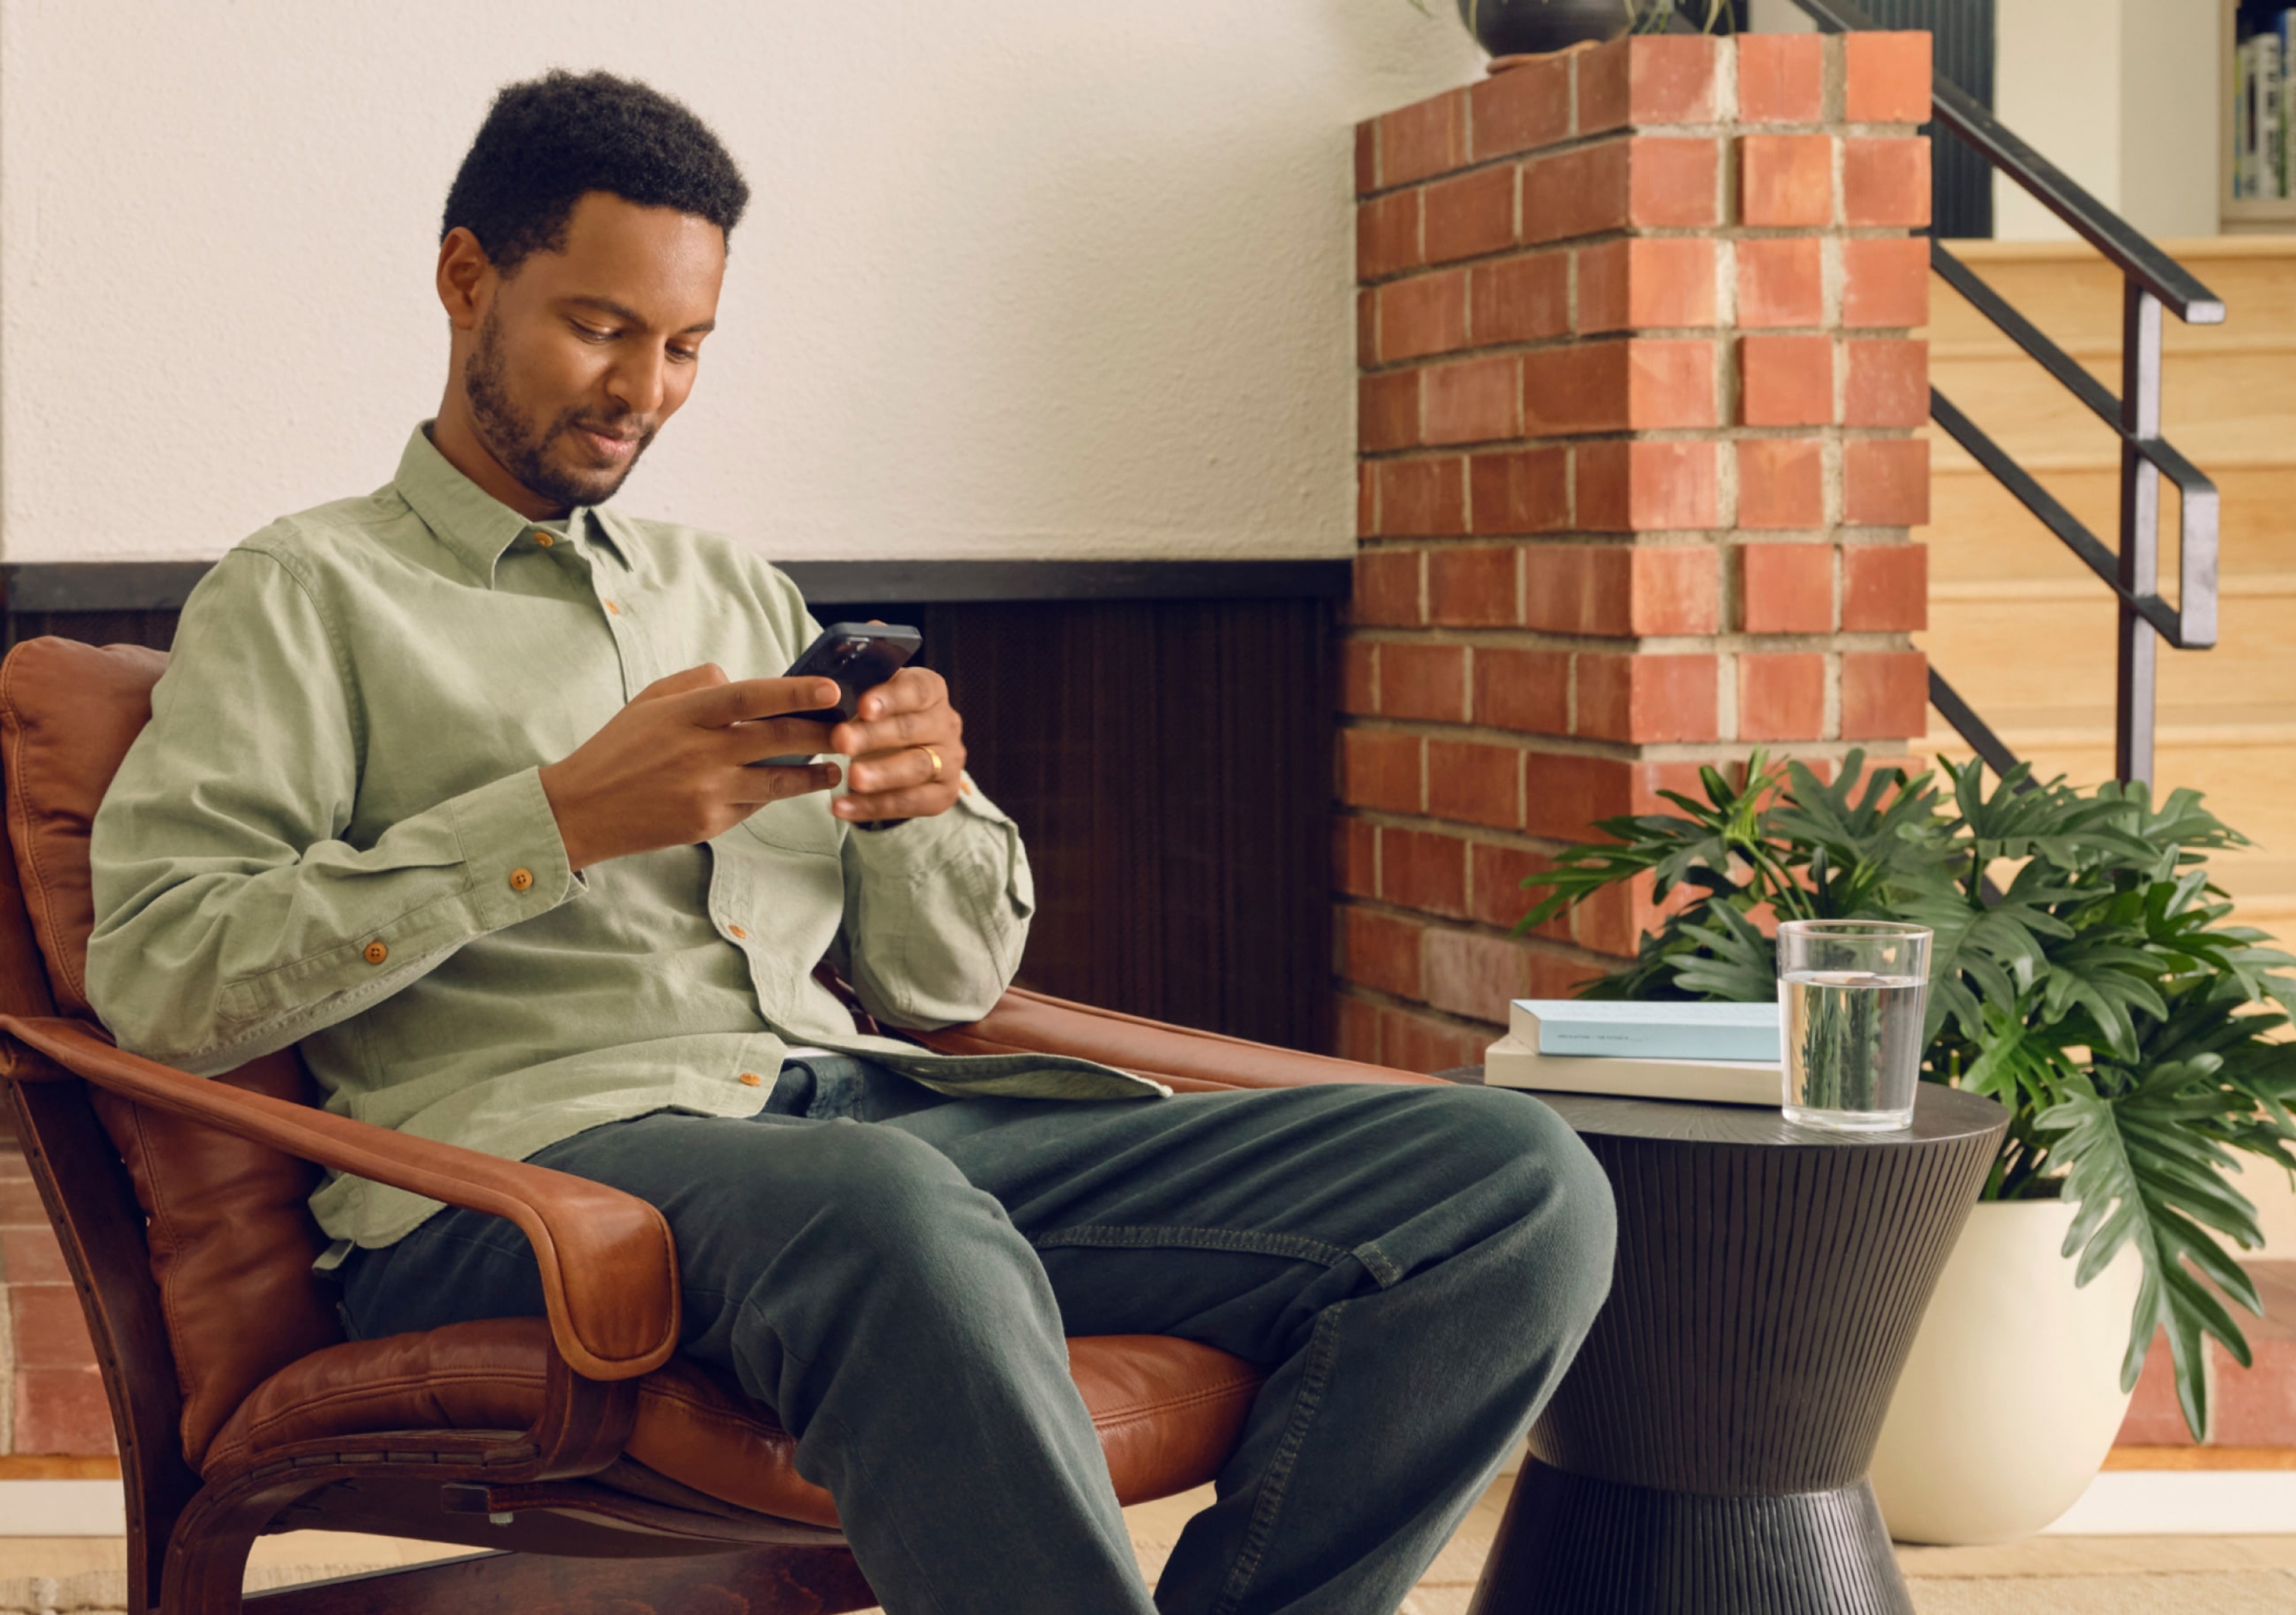 Una persona usa la app Sonos mientras está sentada en el living